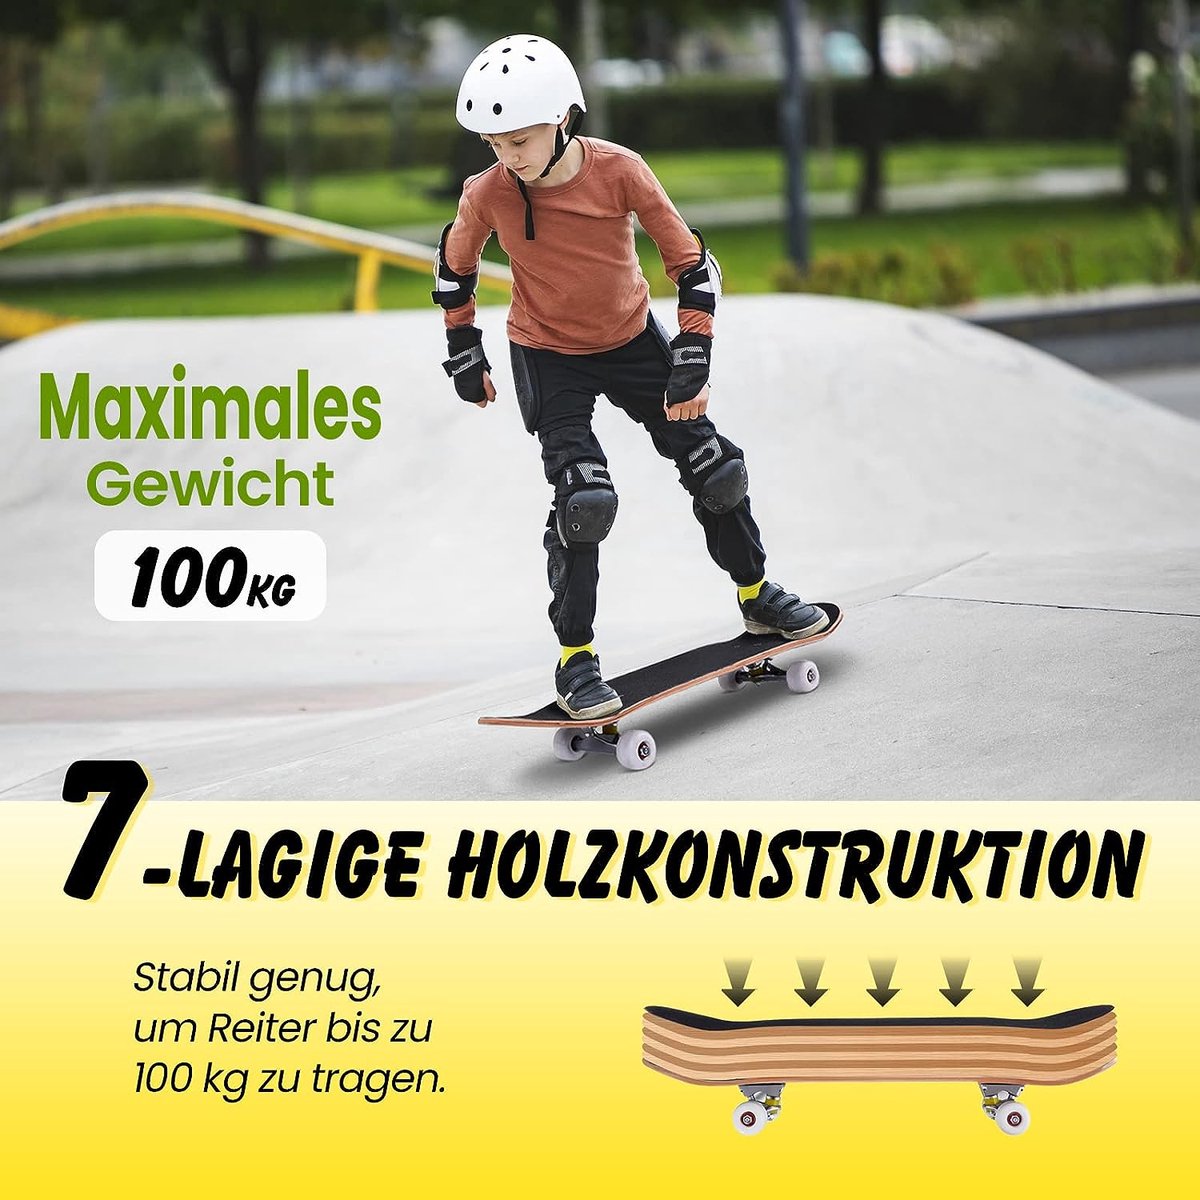 80 x 20 cm skateboard voor beginners, complete cruiser met ABEC-7 kogellagers, 7-laags longboard esdoornhout HMCWSP35211